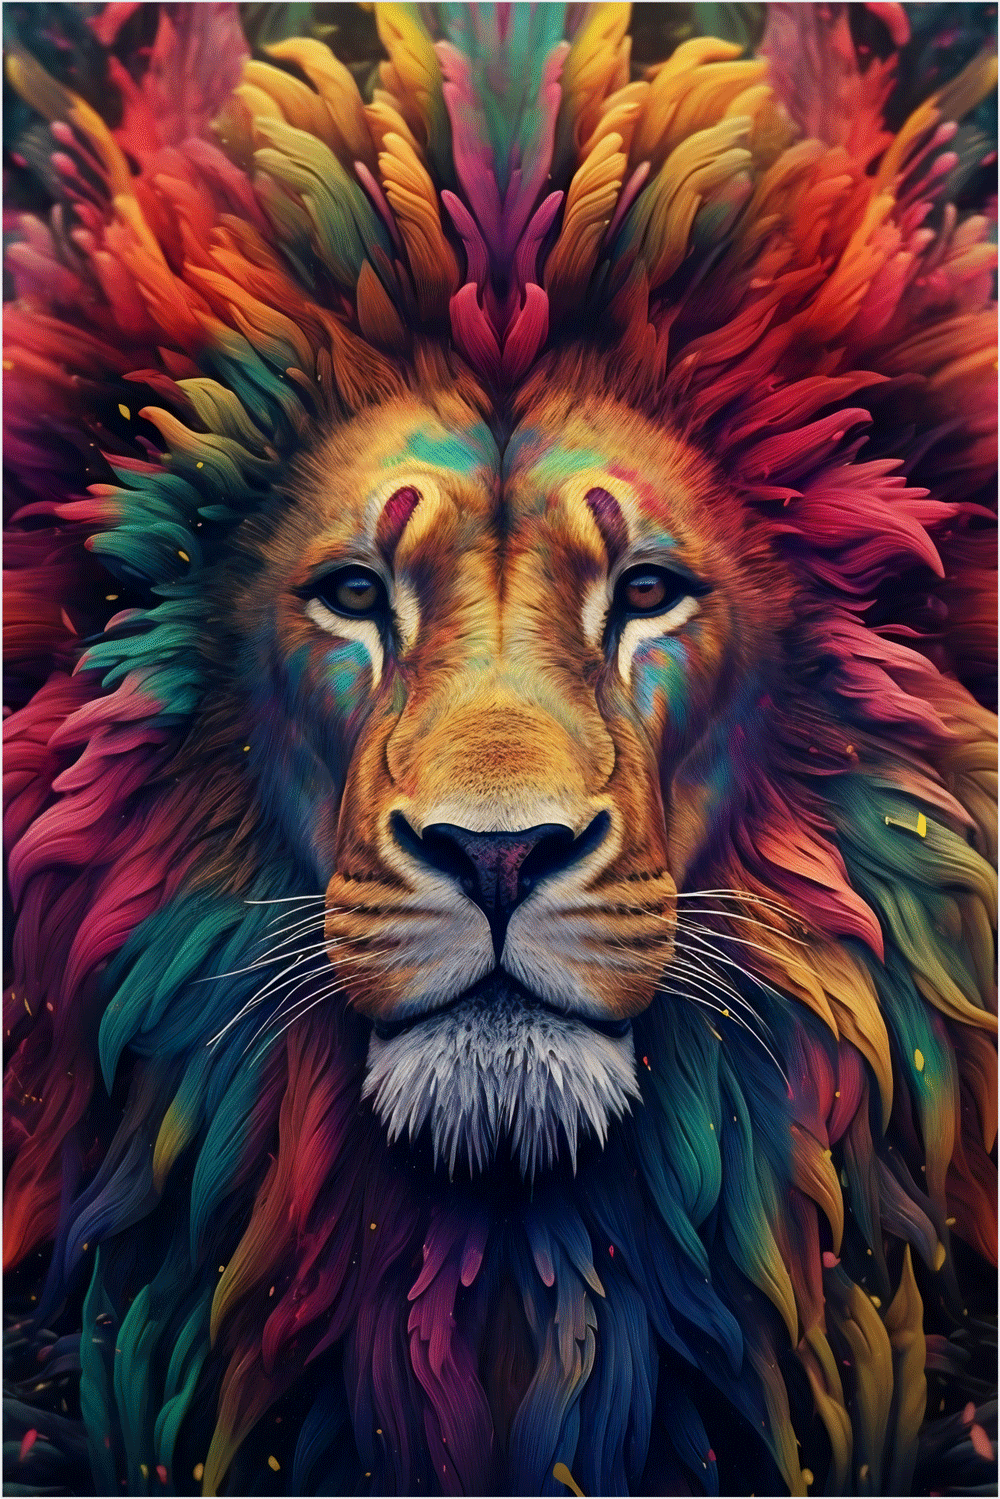 Pintando um leão na savana usando tinta acrílica sobre tela – Blog